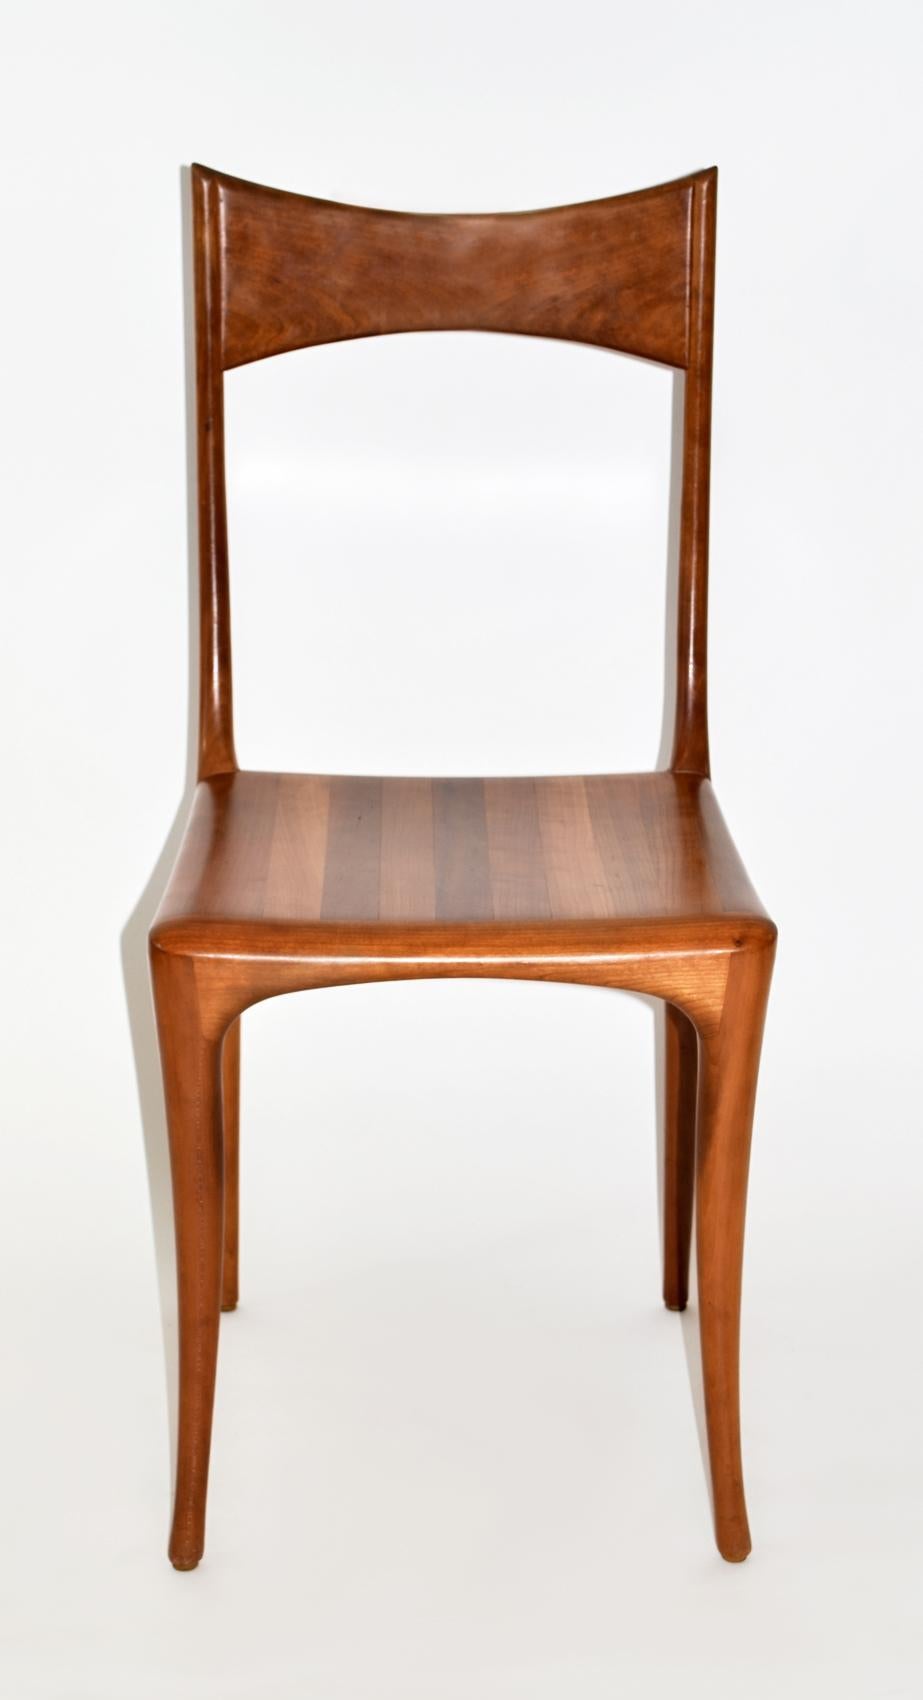 Cherry Roberto Lazzeroni for Ceccotti Collezioni Dining Set Eight Chairs 1980s Wood